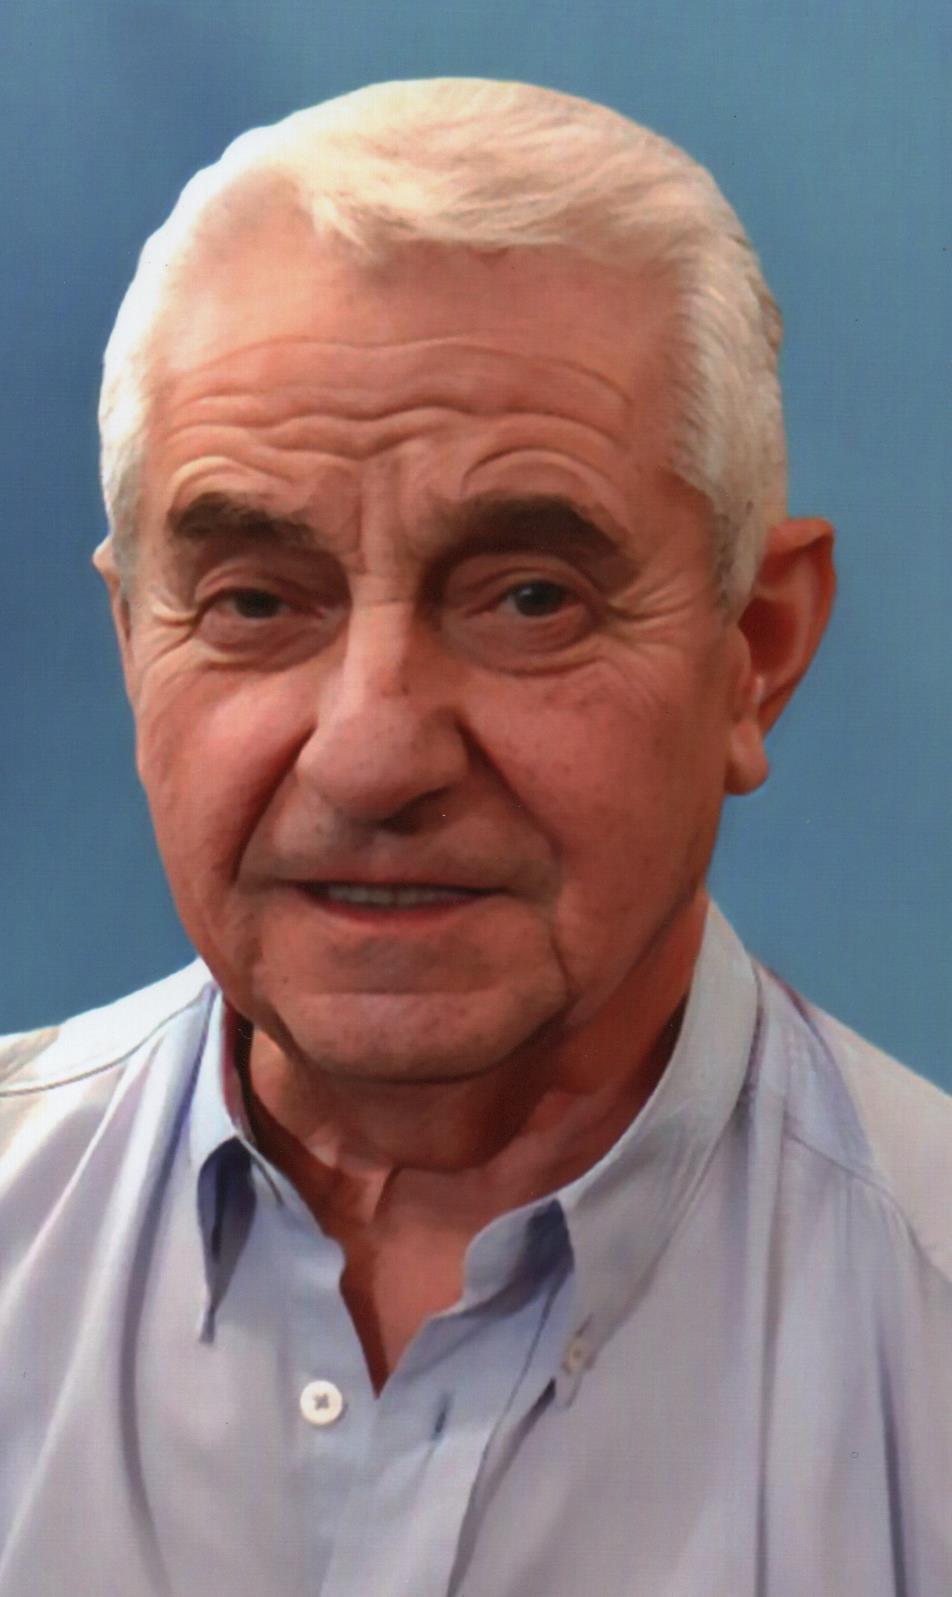 Έφυγε από την ζωή ο Xρήστος Τζήκος  σε ηλικία 74 ετών- Η κηδεία θα τελεστεί σήμερα Πέμπτη 22  Δεκεμβρίου